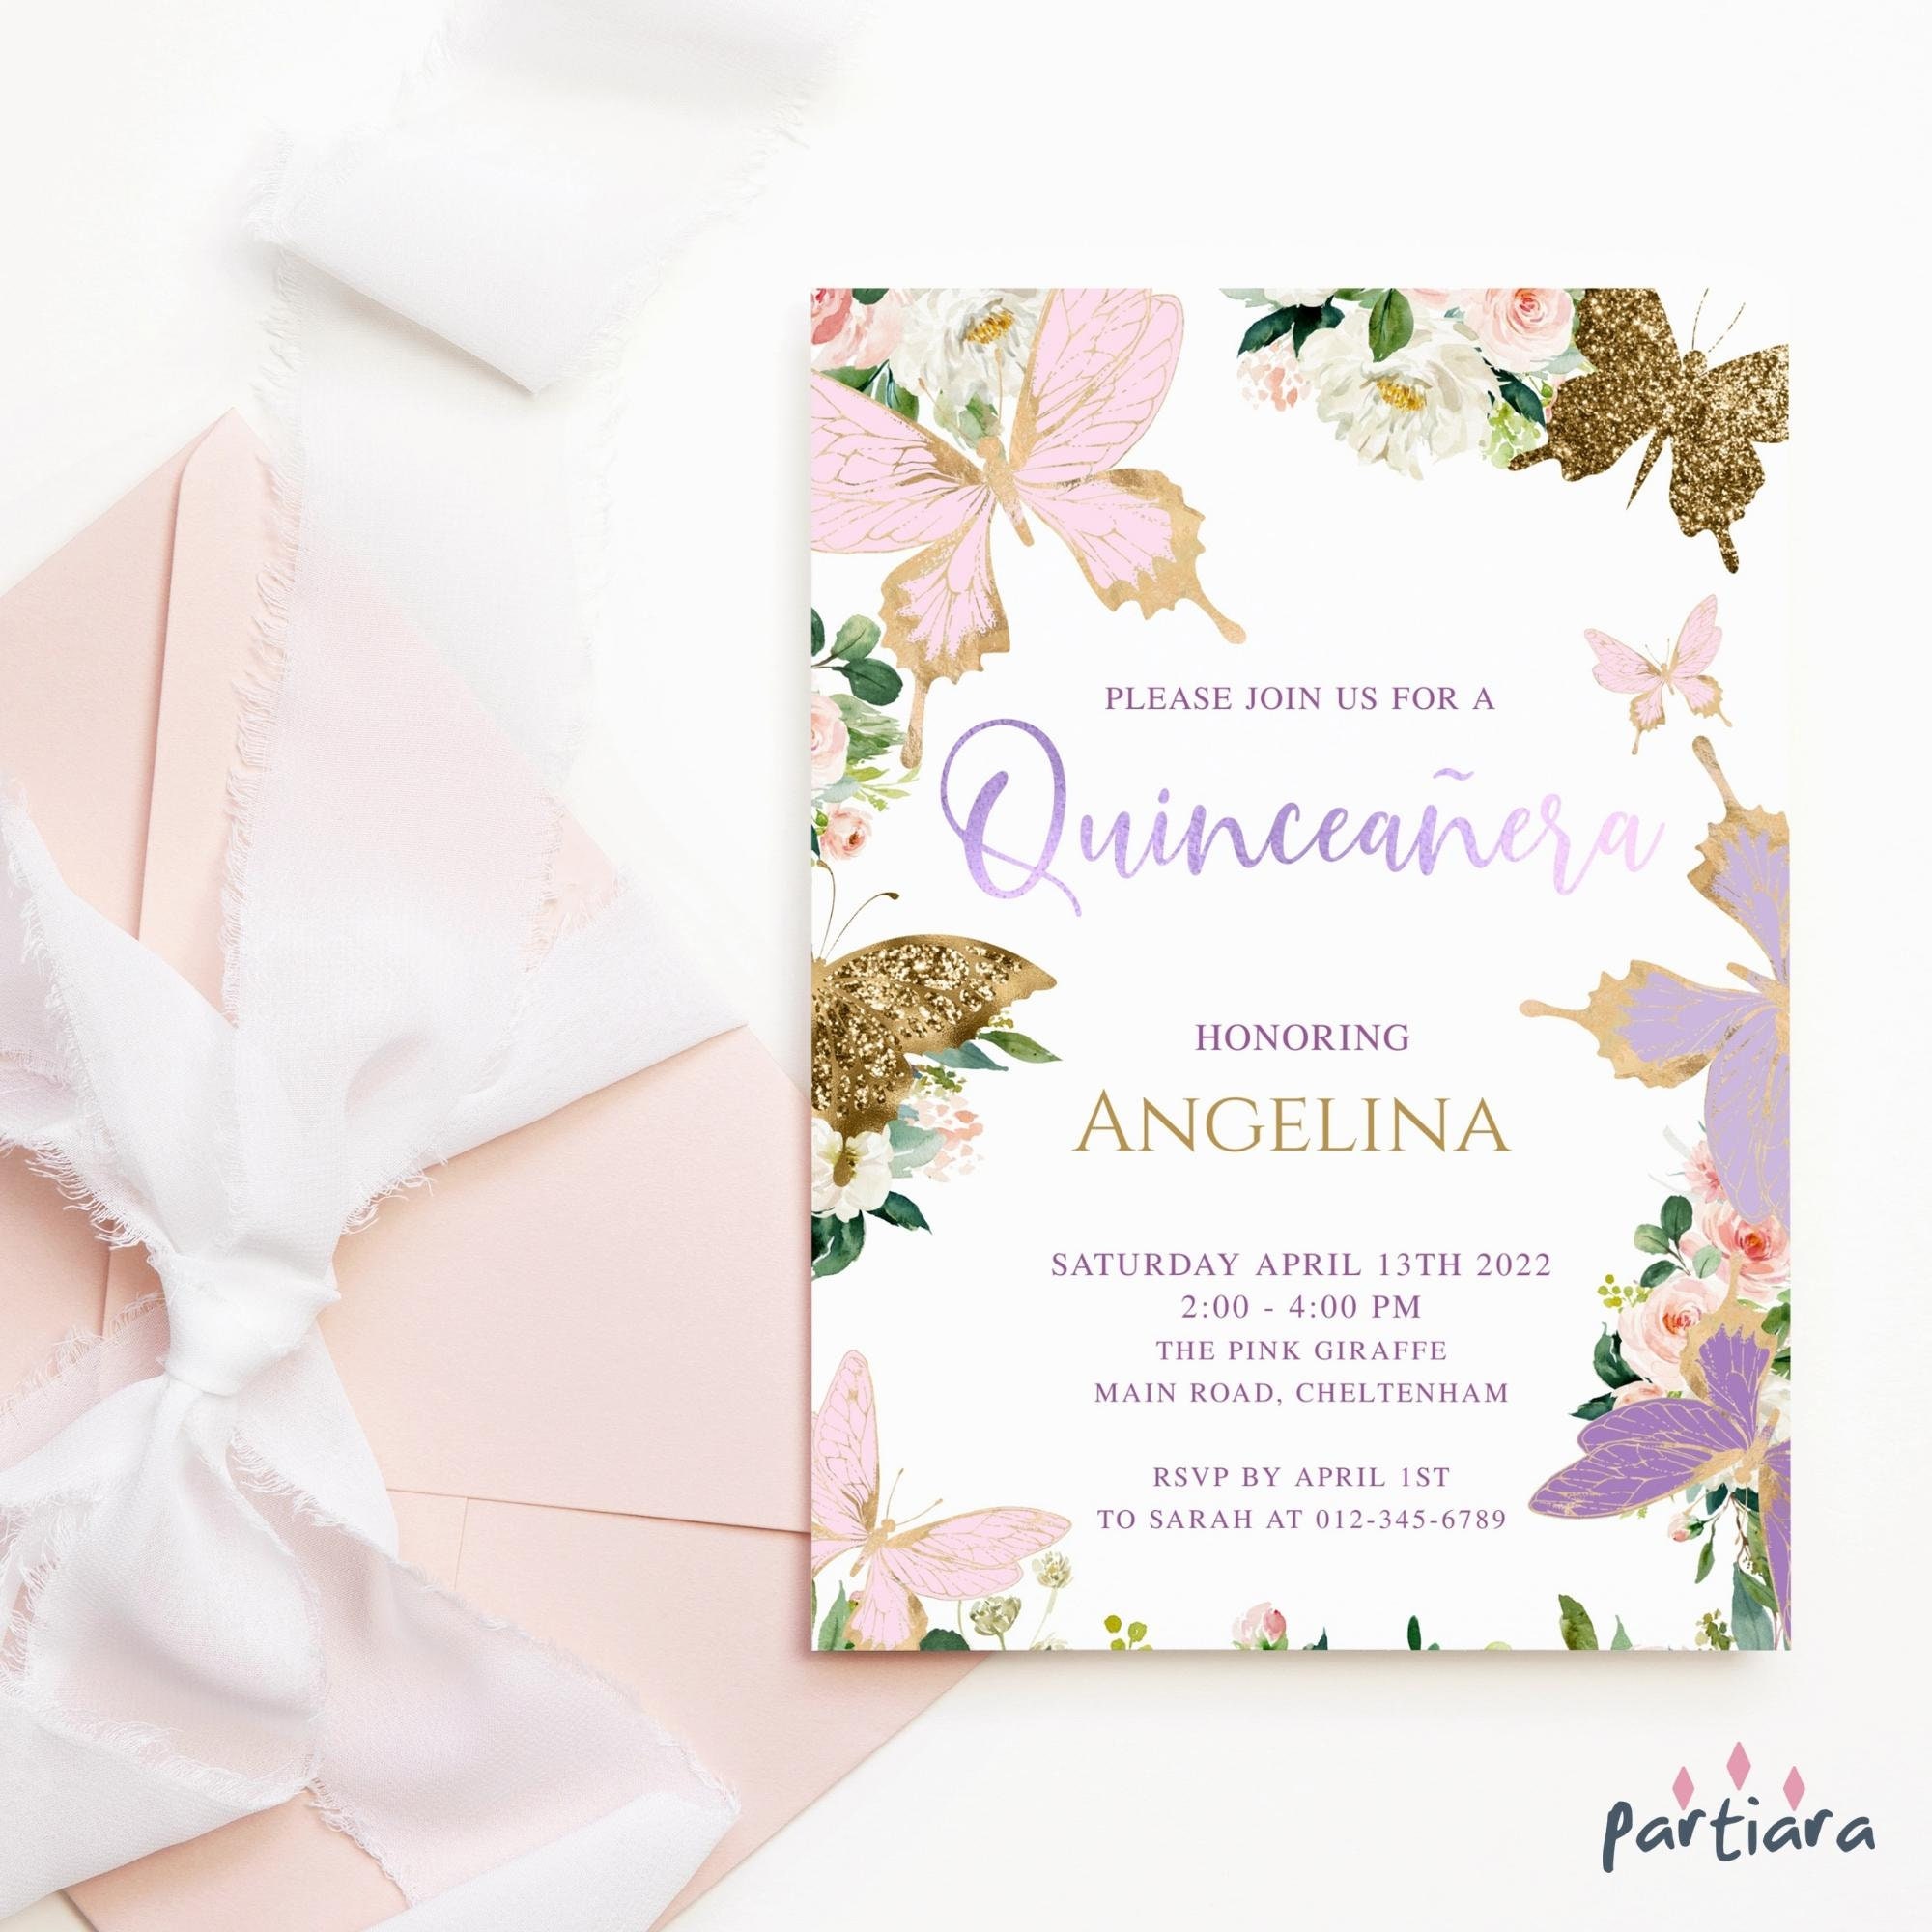 Enchanted quinceañera invitations